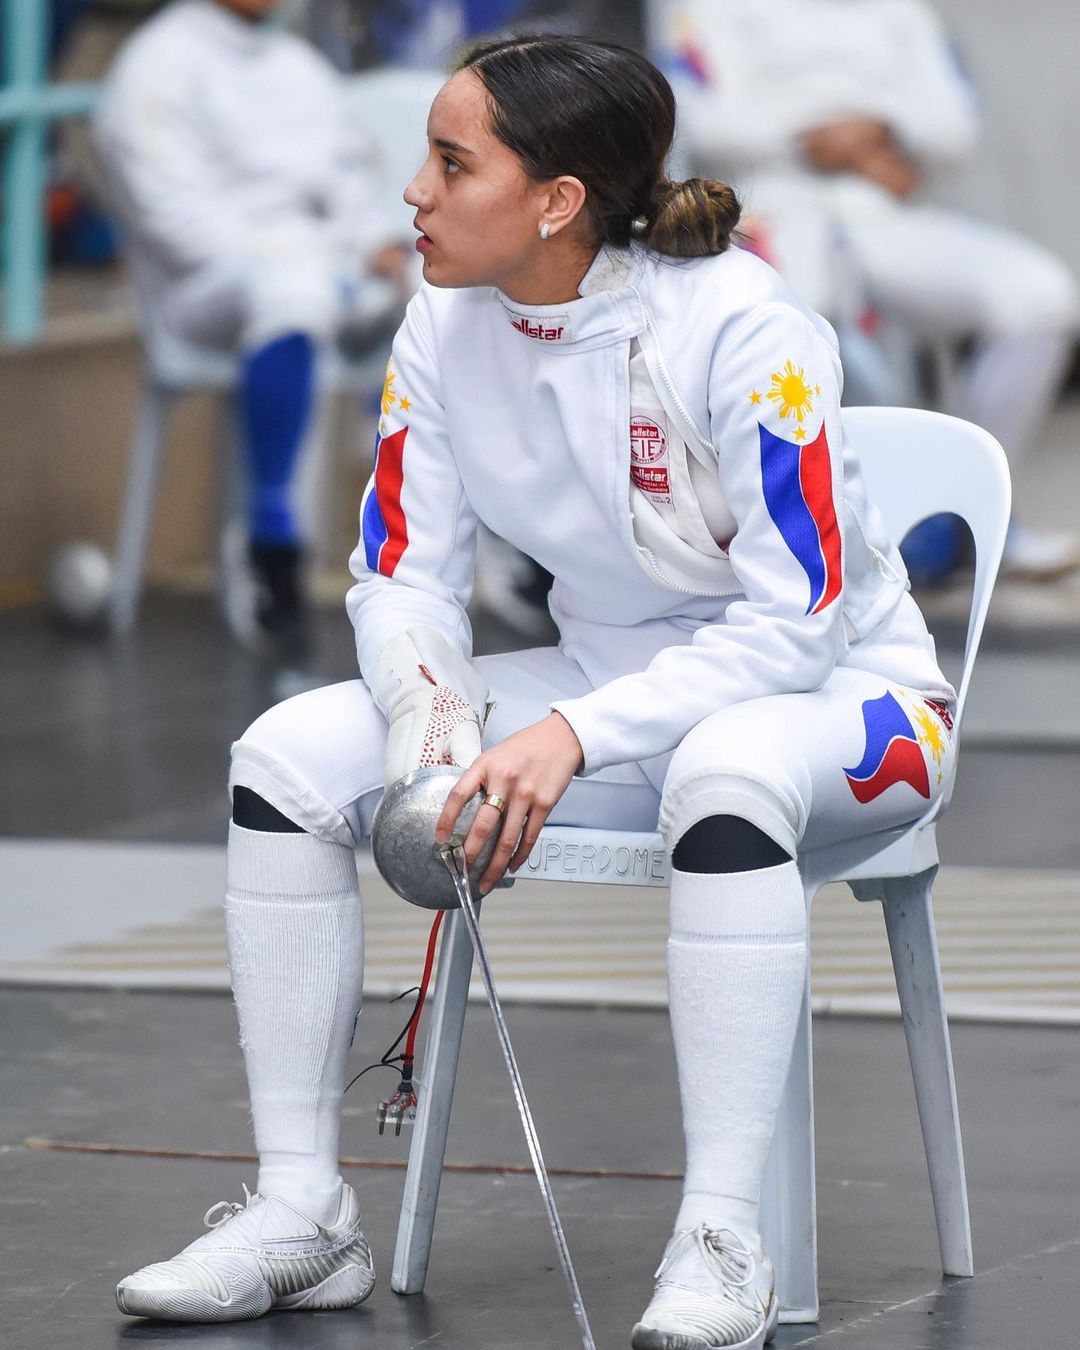 Juliana Gomez fencing